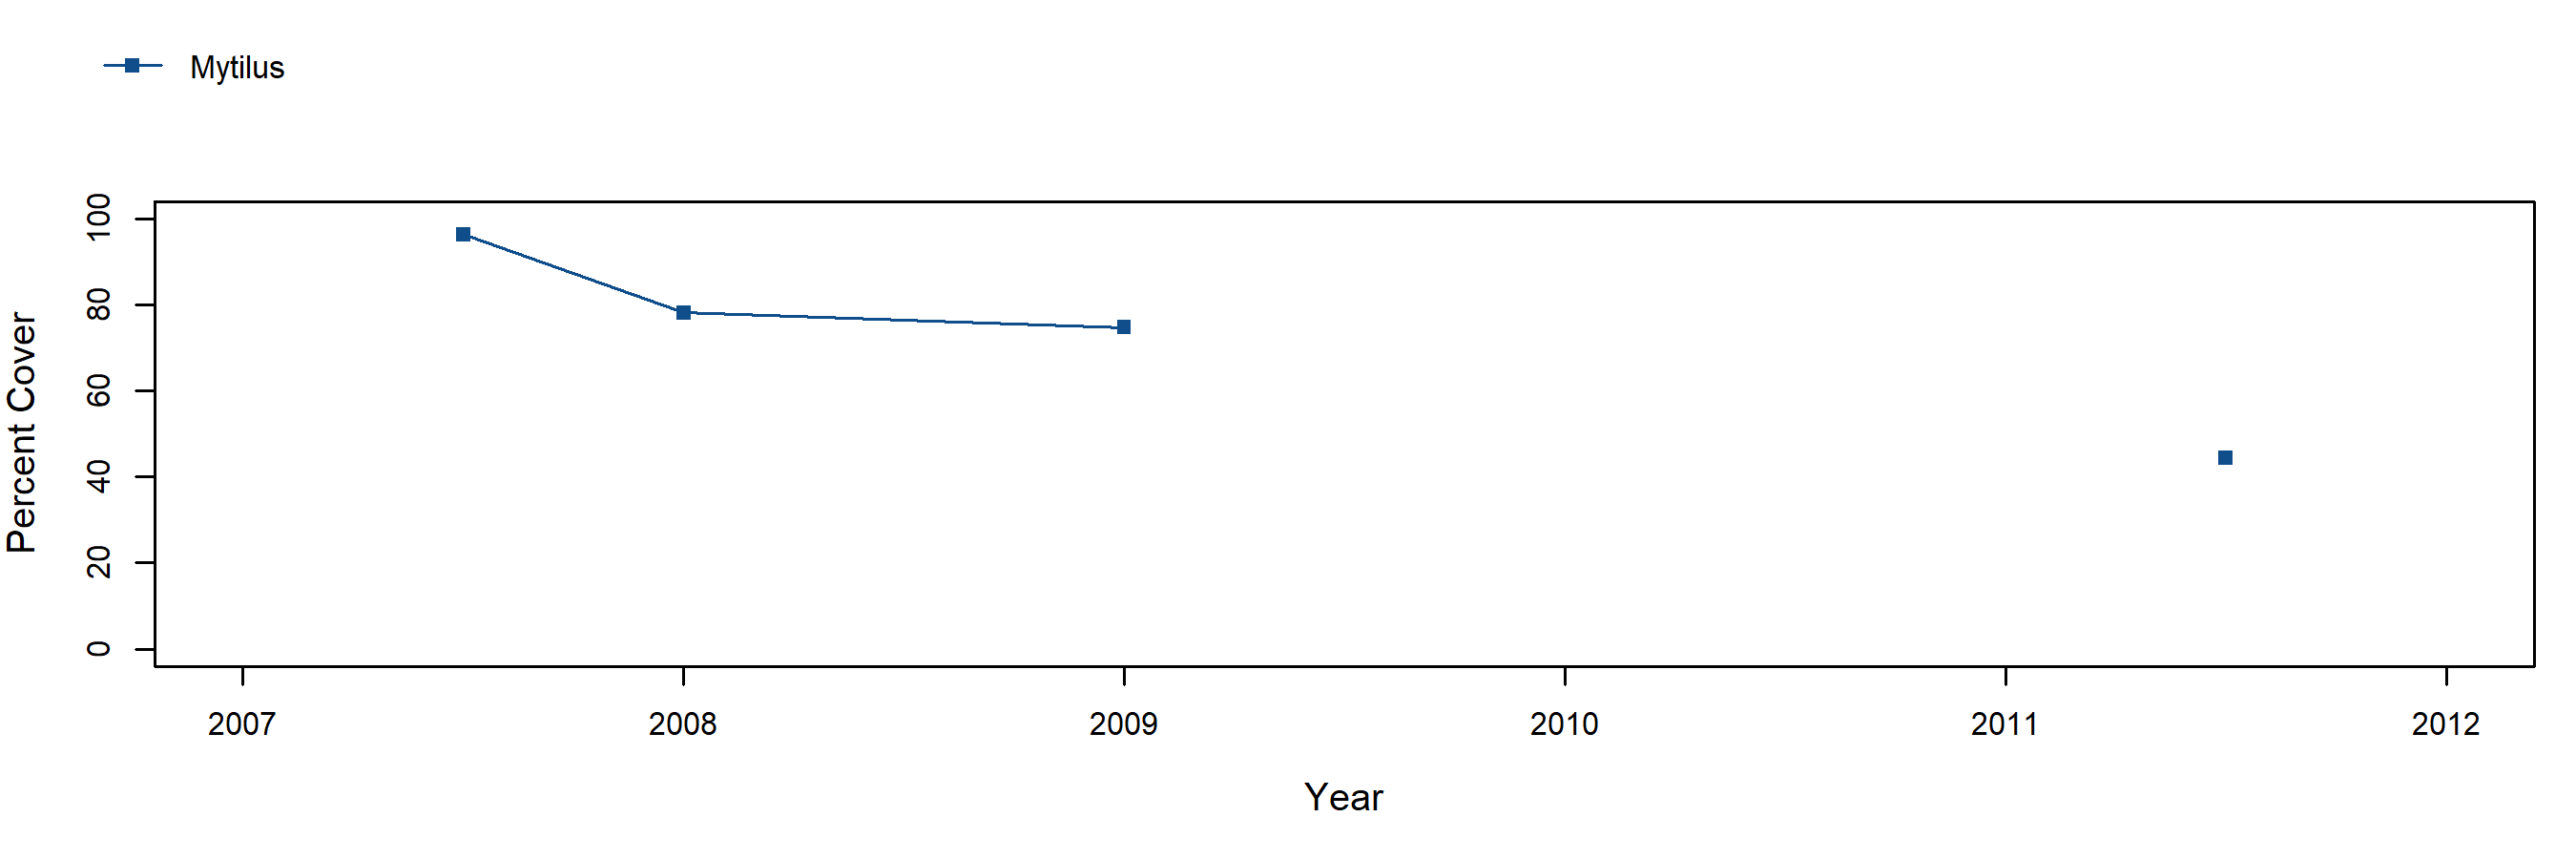 Vista del Mar Mytilus trend plot